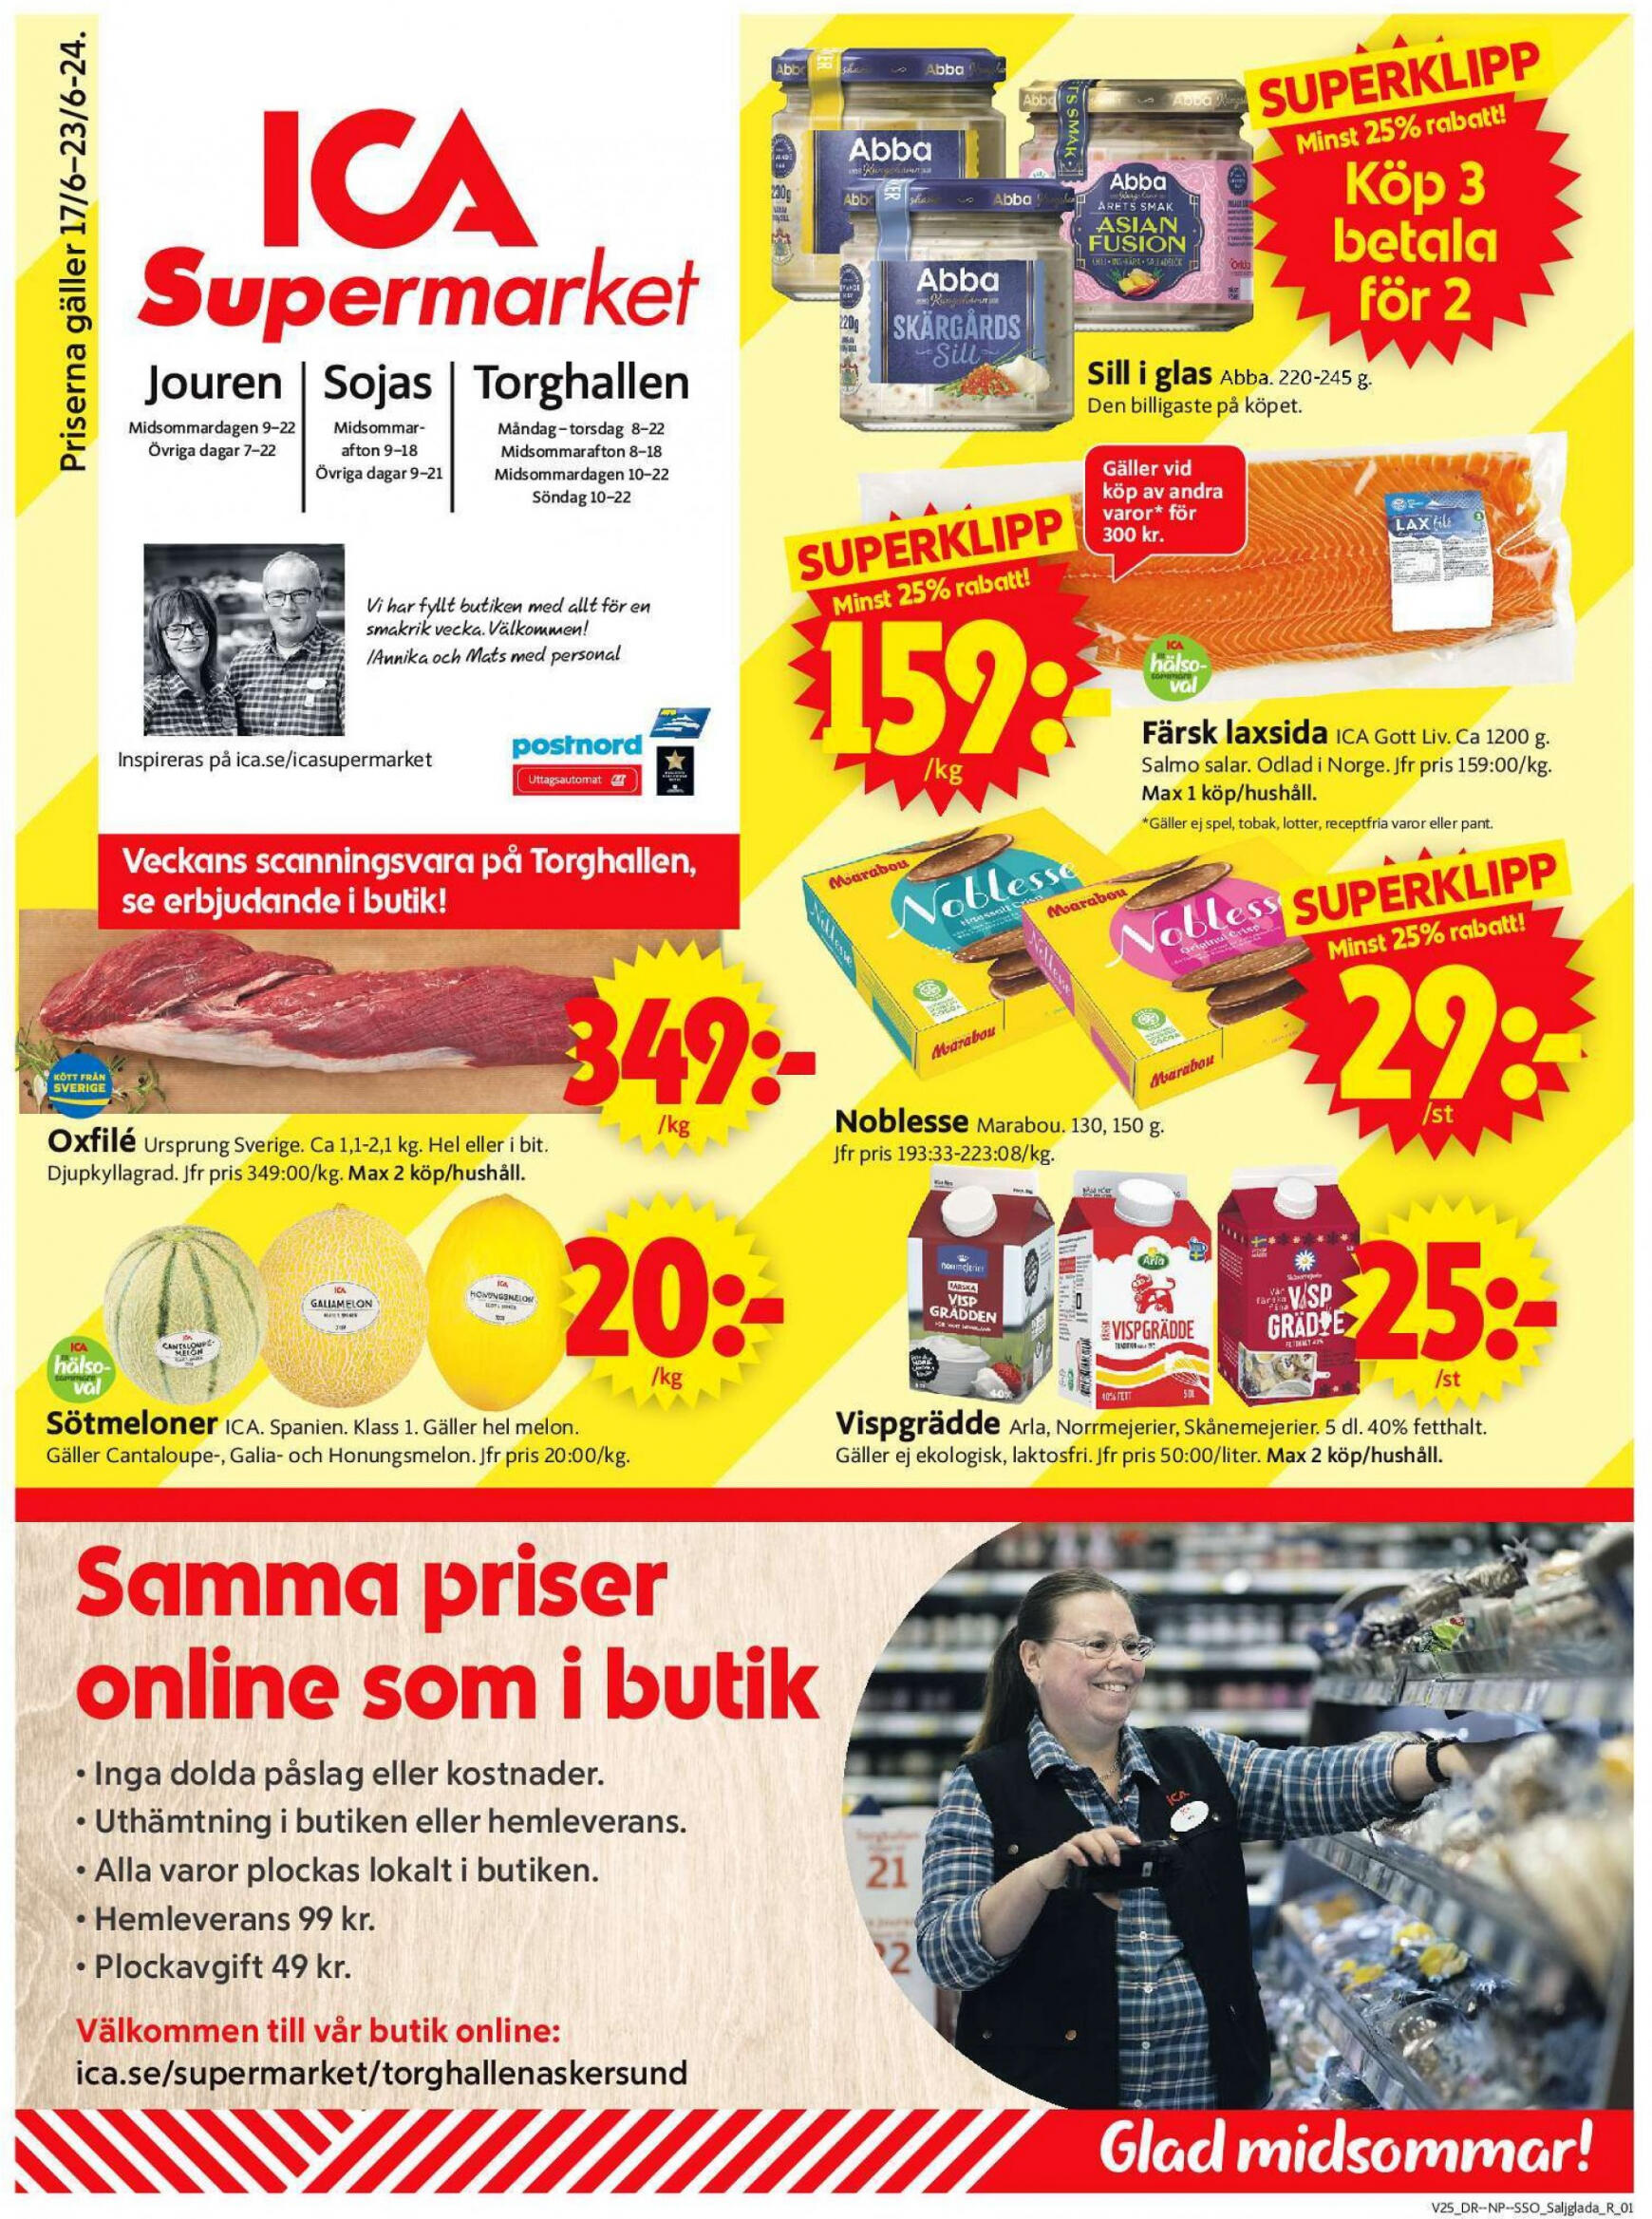 ica-supermarket - Flyer ICA Supermarket current 17.06. - 23.06.